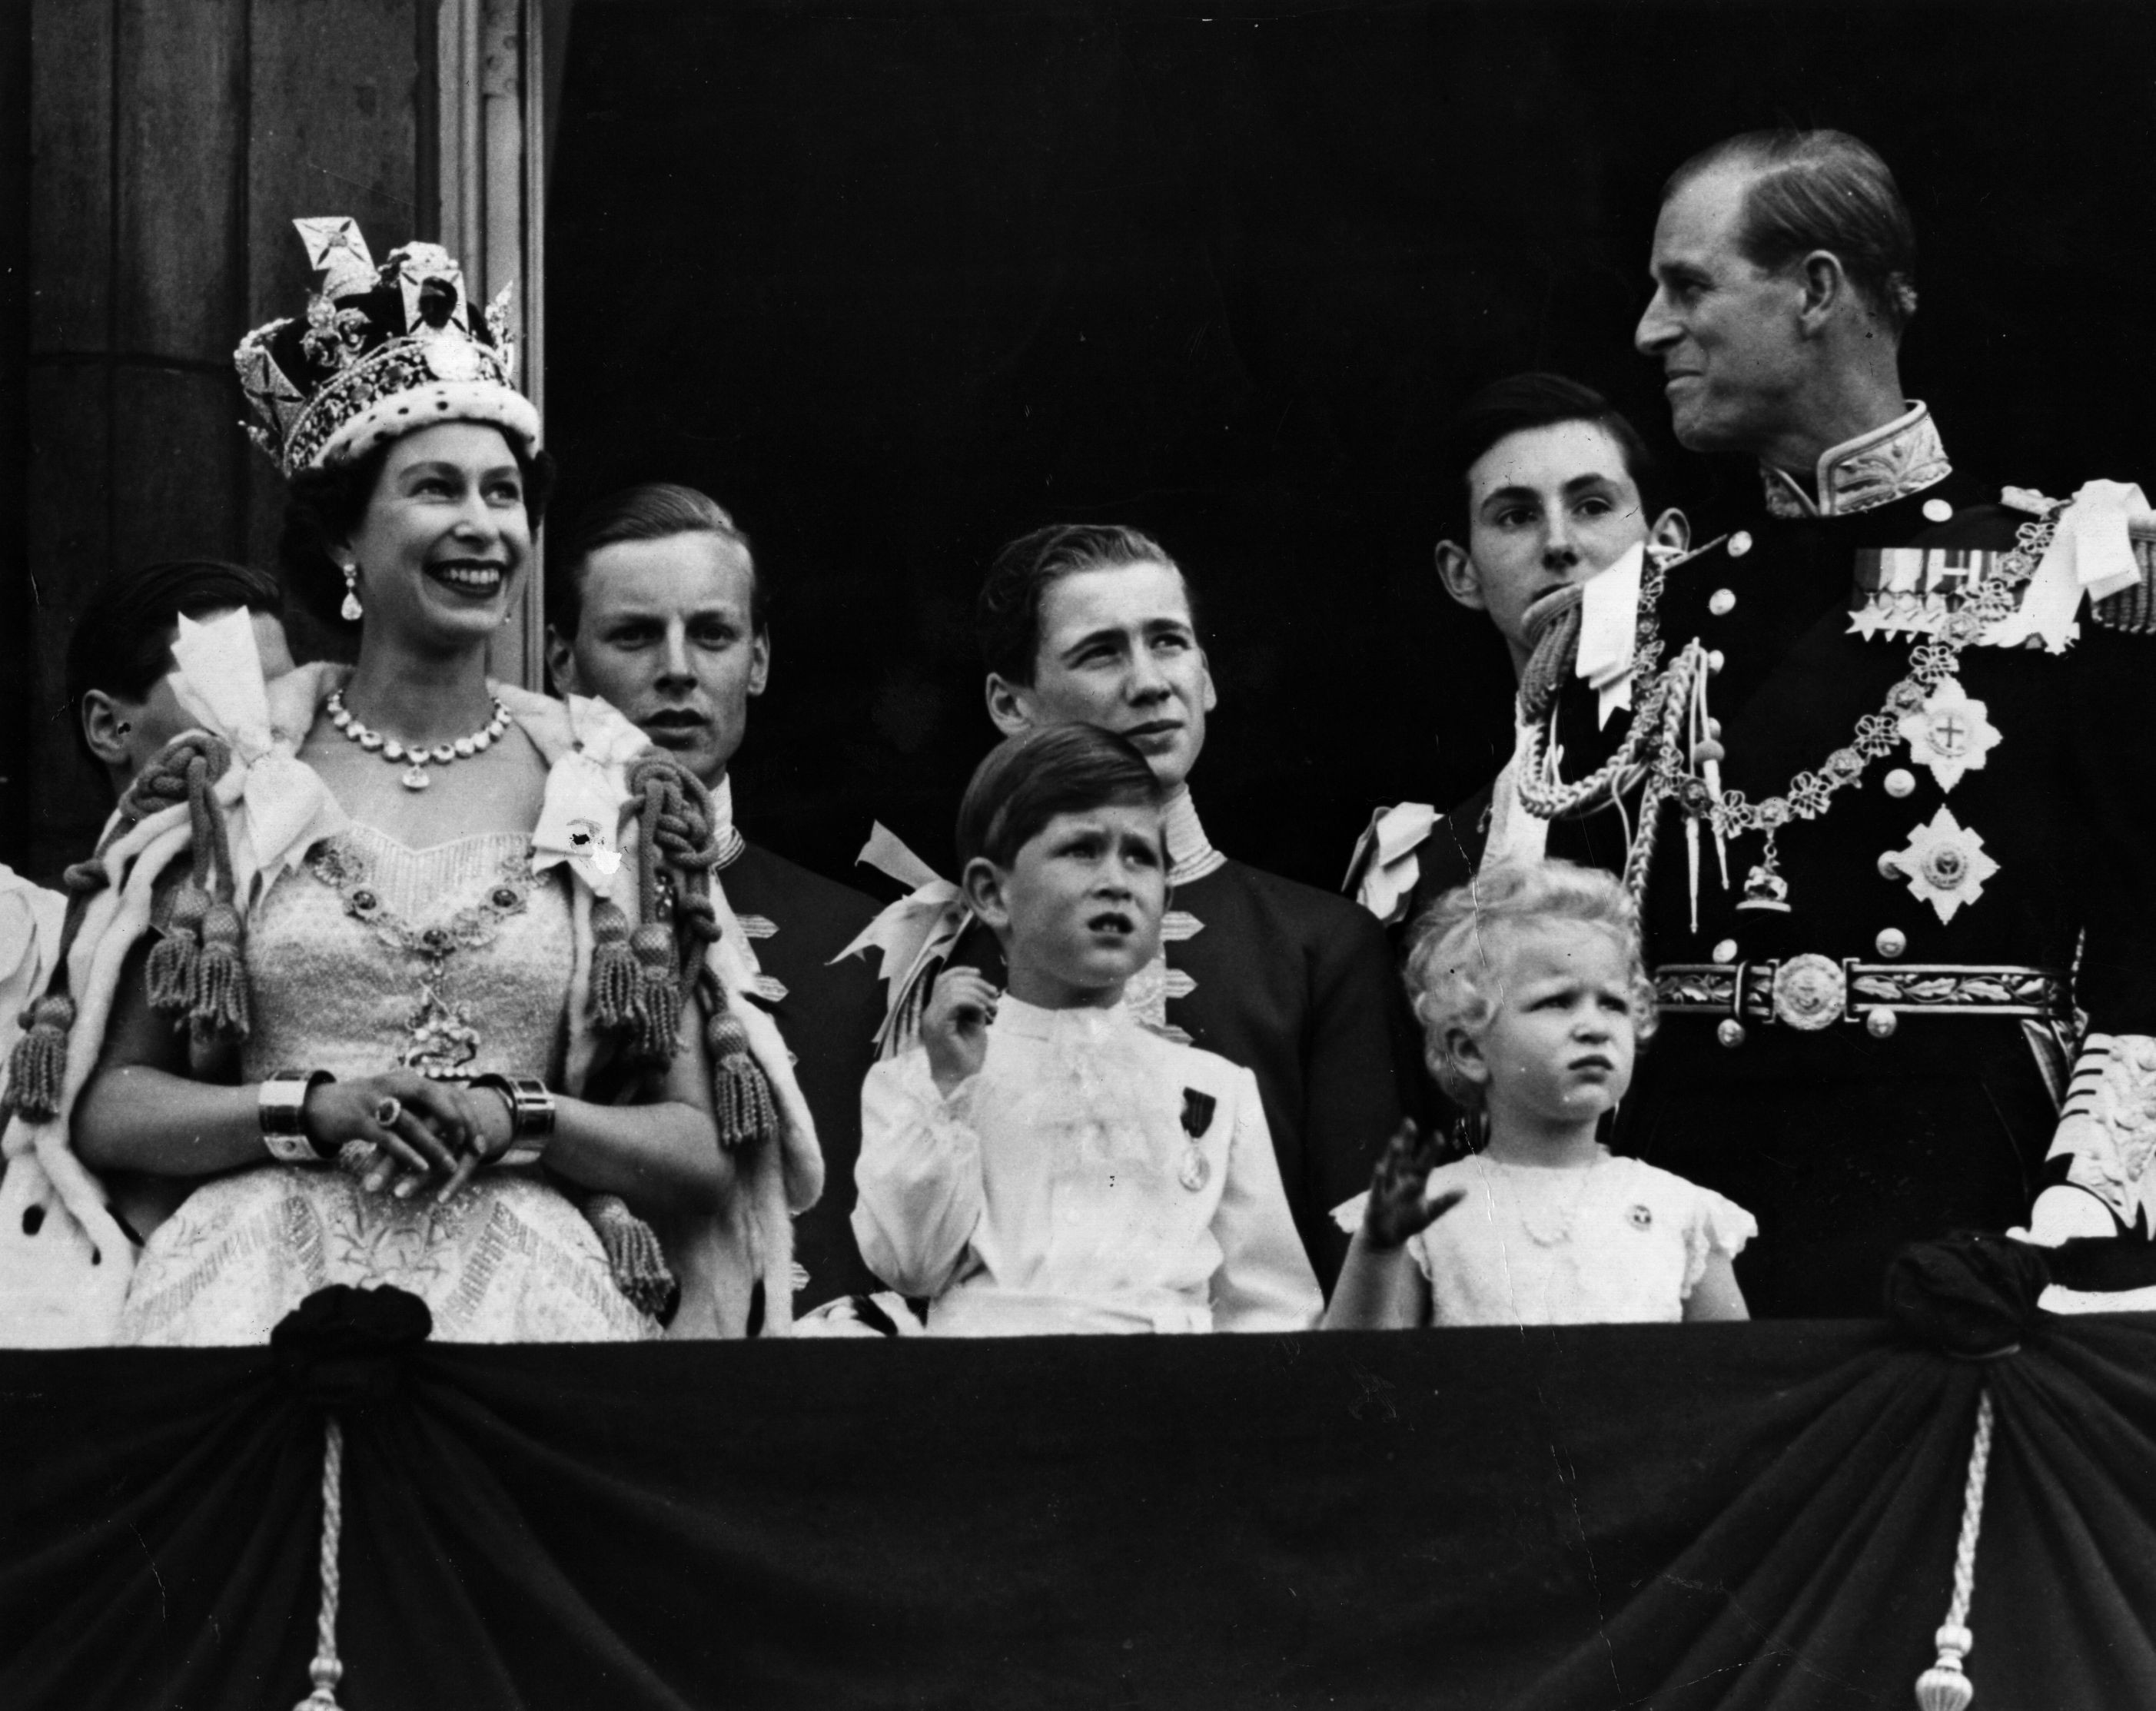 La reina Isabel II en el Palacio de Buckingham después de su coronación en junio de 1953 (Imagen: Getty Images)